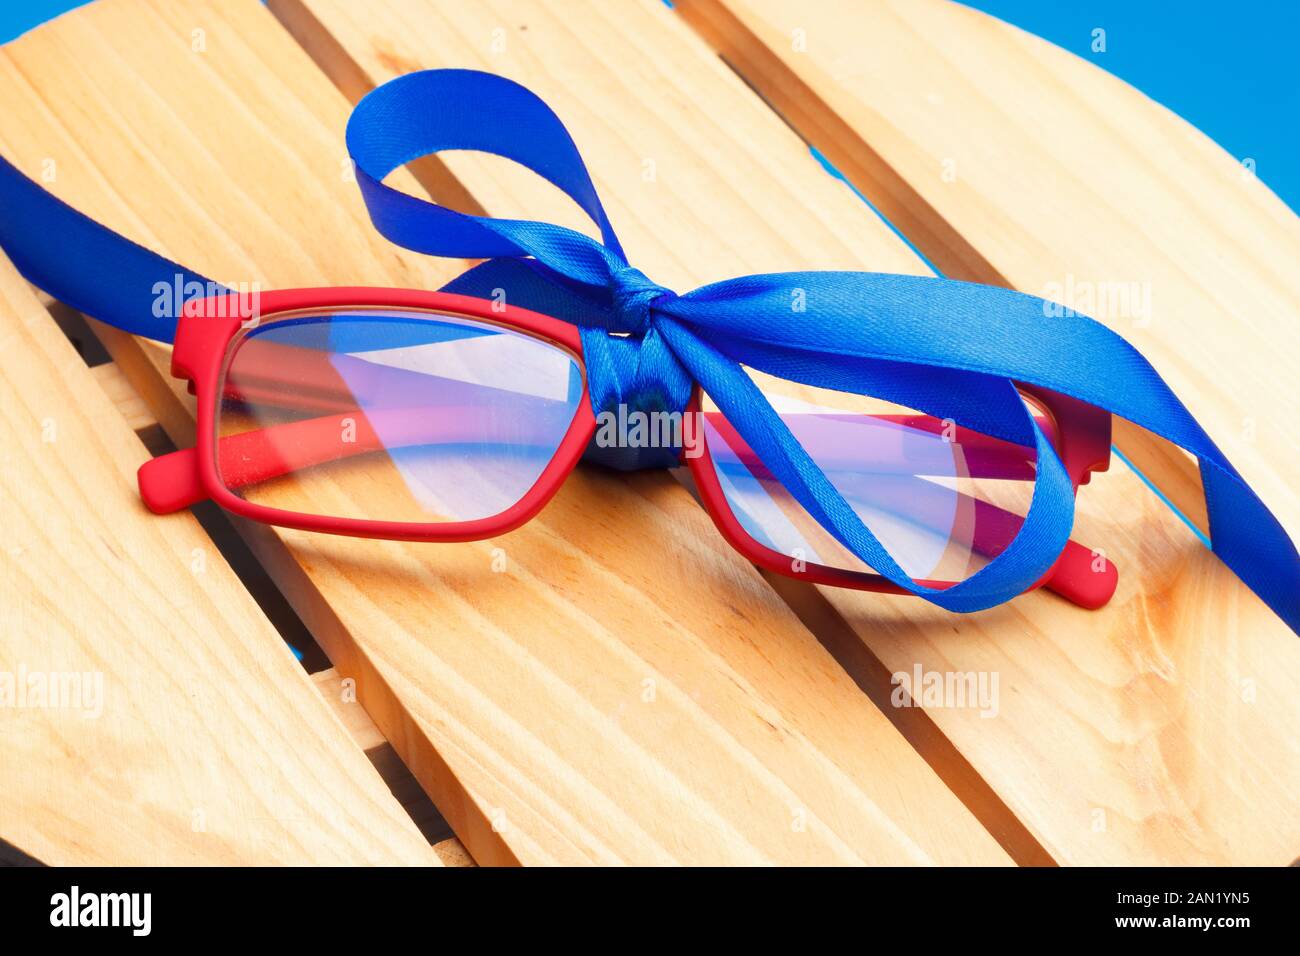 Gli occhiali e le lenti graduate su uno sfondo semplice, con una scala  graduata di occhiali per essere in grado di vedere sia da lontano o vicino  o per ingrandire le dimensioni